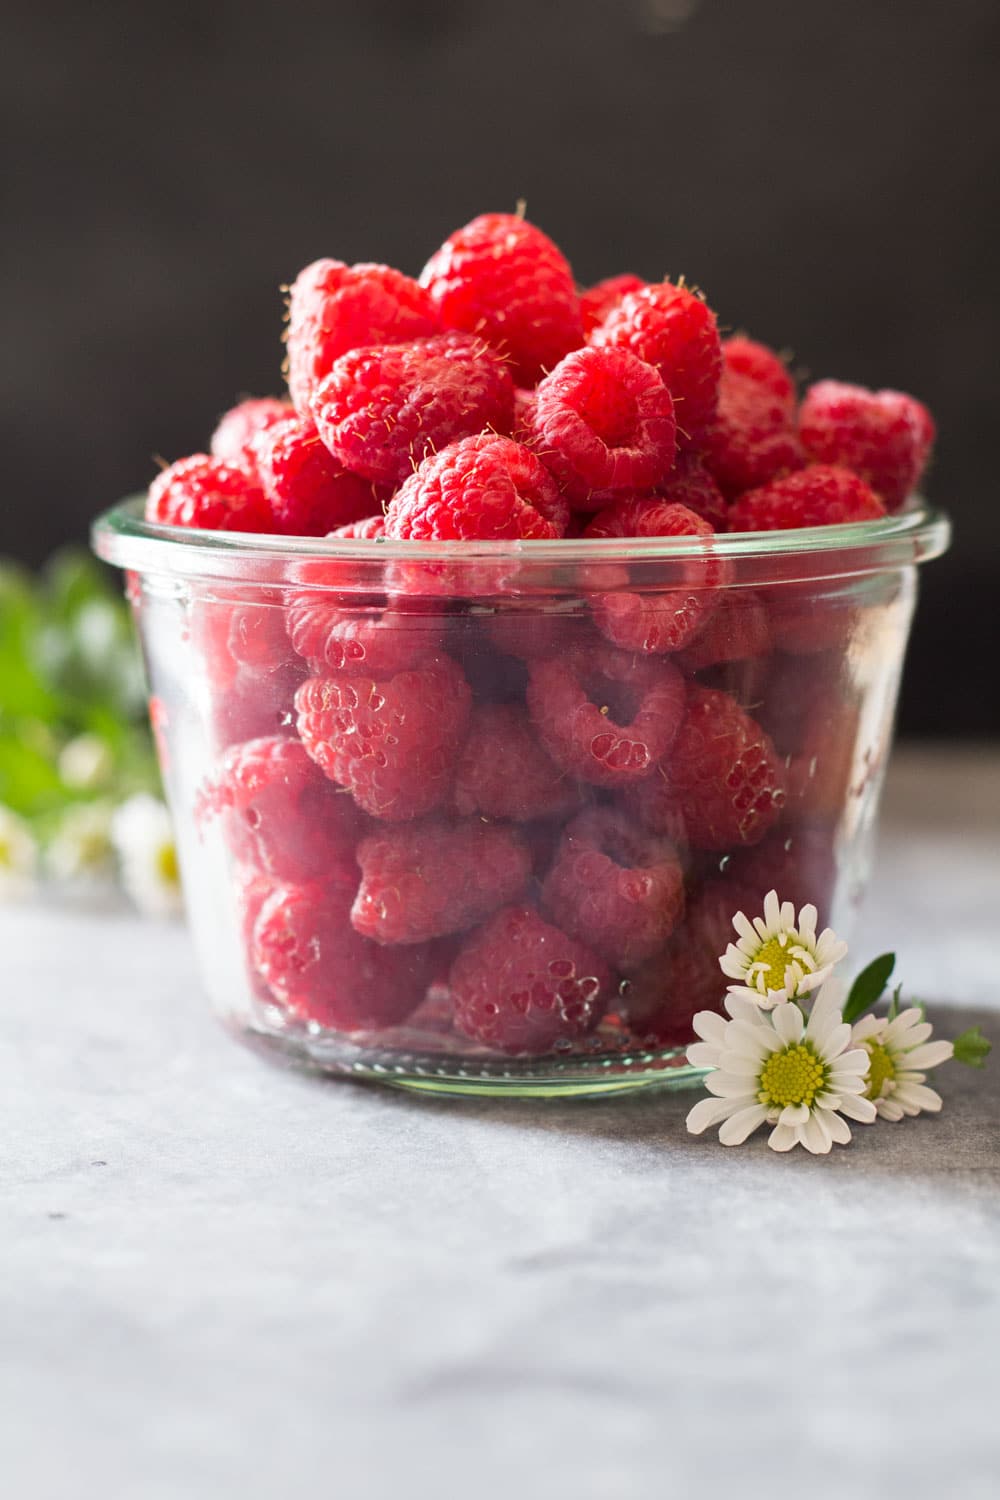 Fresh raspberries in a glass jar.